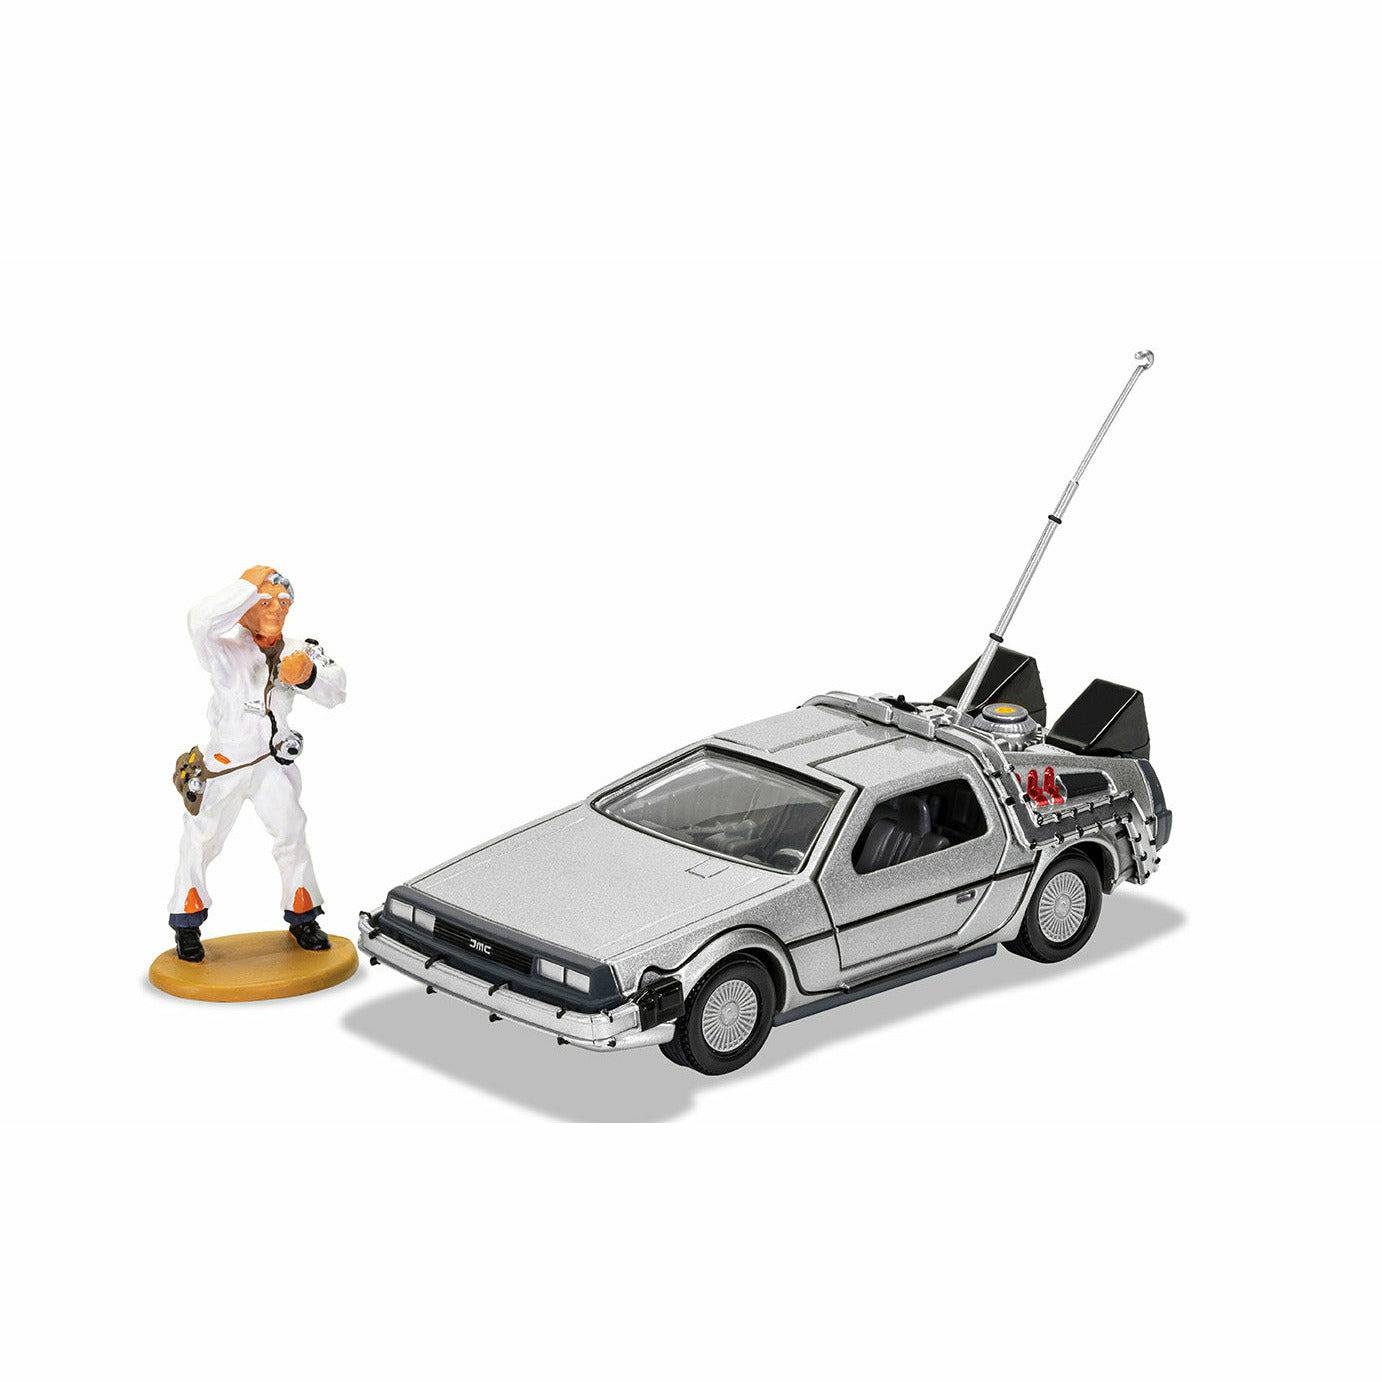 Corgi Back to the Future die-cast 1:36 scale DeLorean with Doc Brown figure